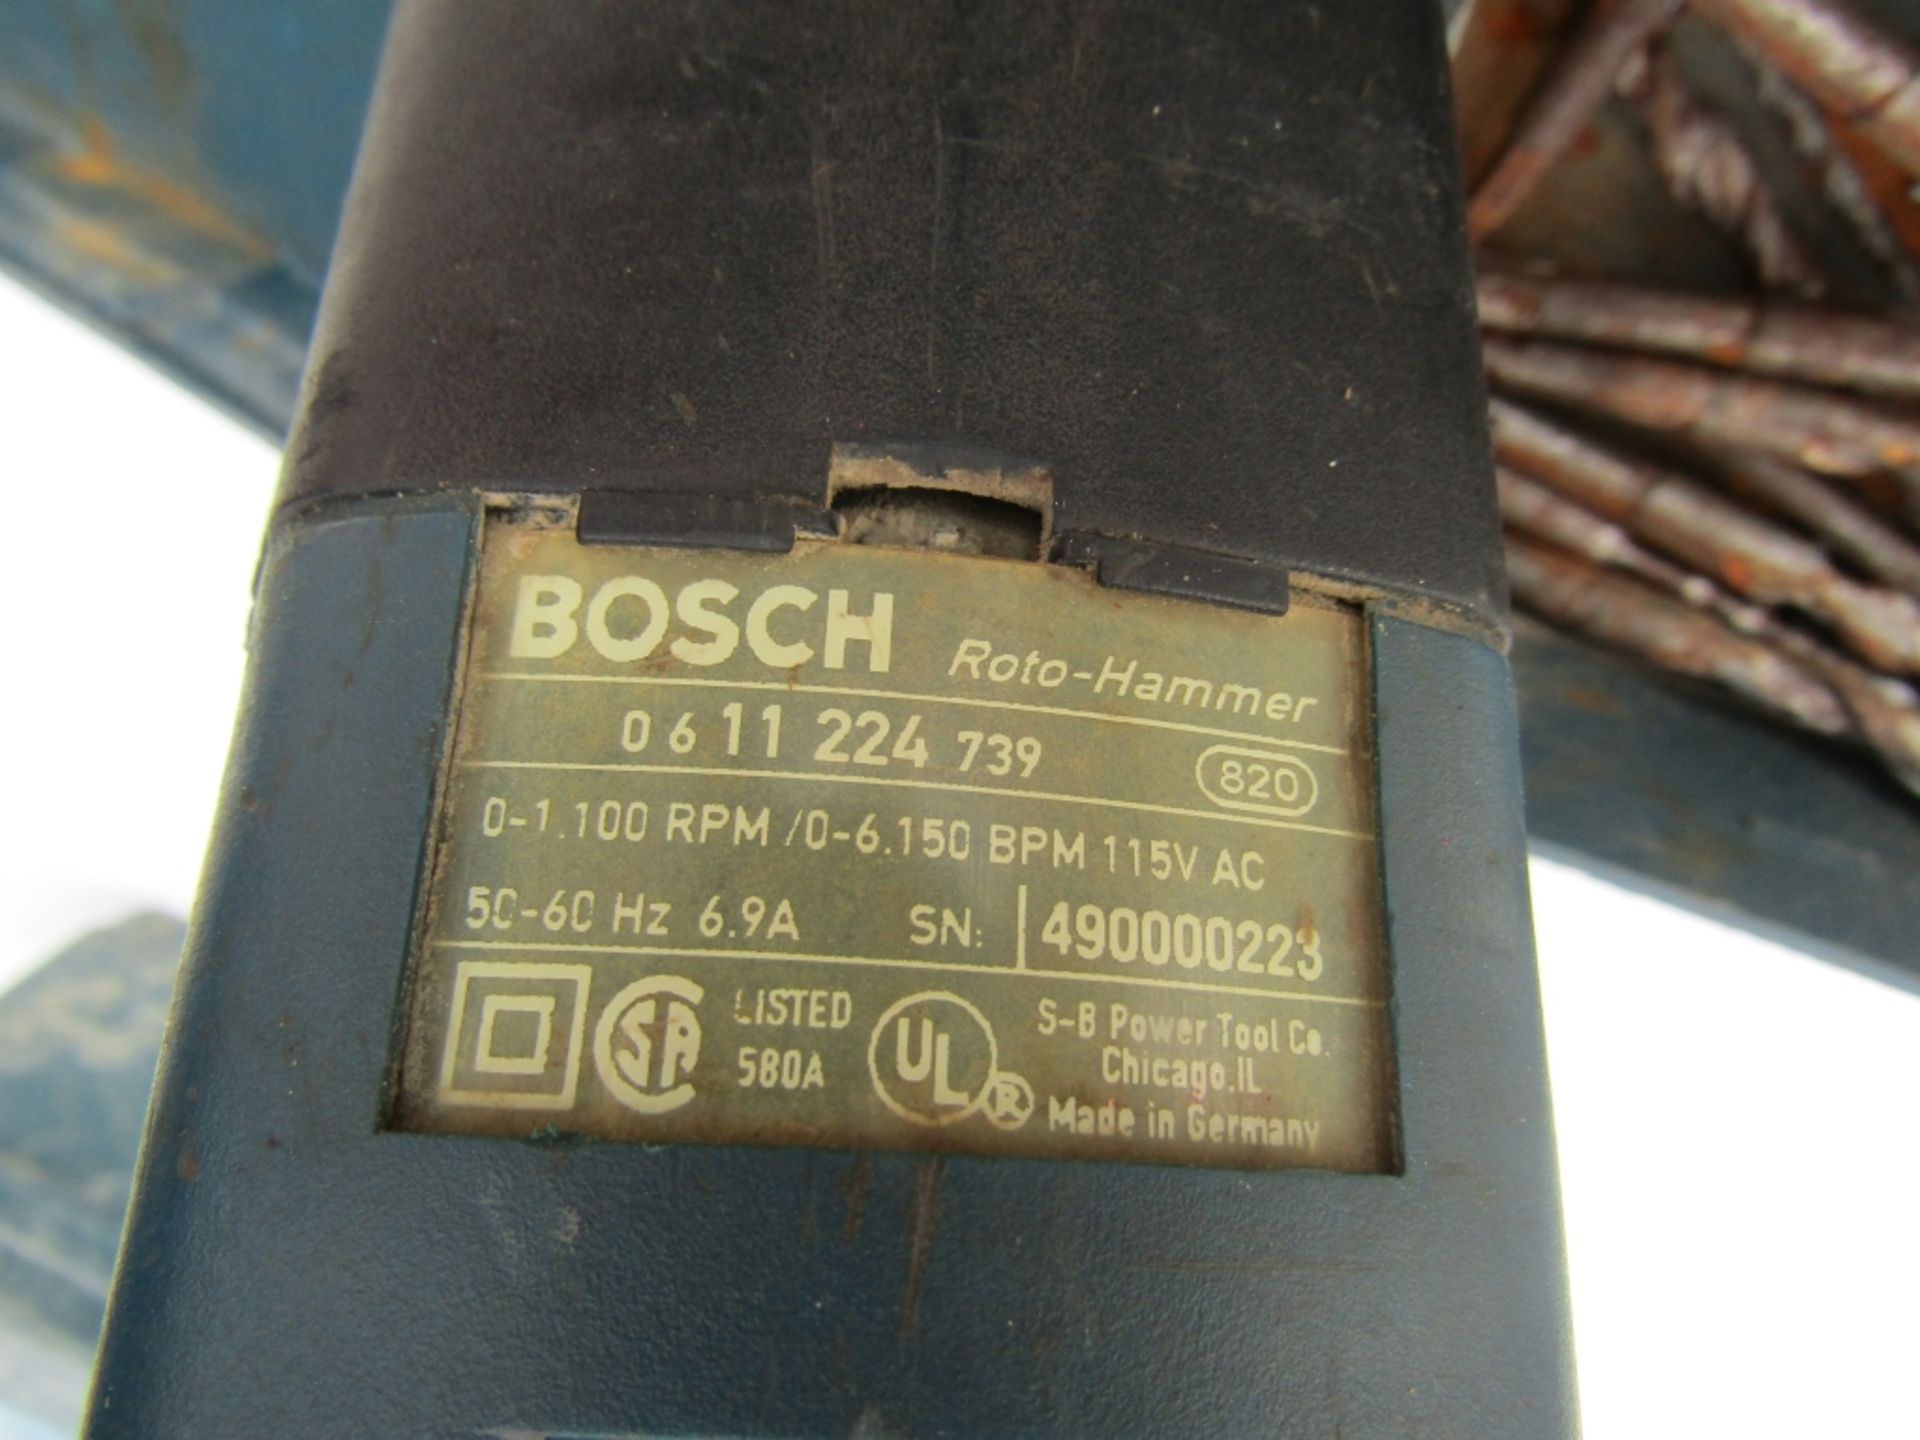 Bosch Bulldog 11224VSR Root-Hammer Drill, Model 224, Serial #490000223, - Image 2 of 2